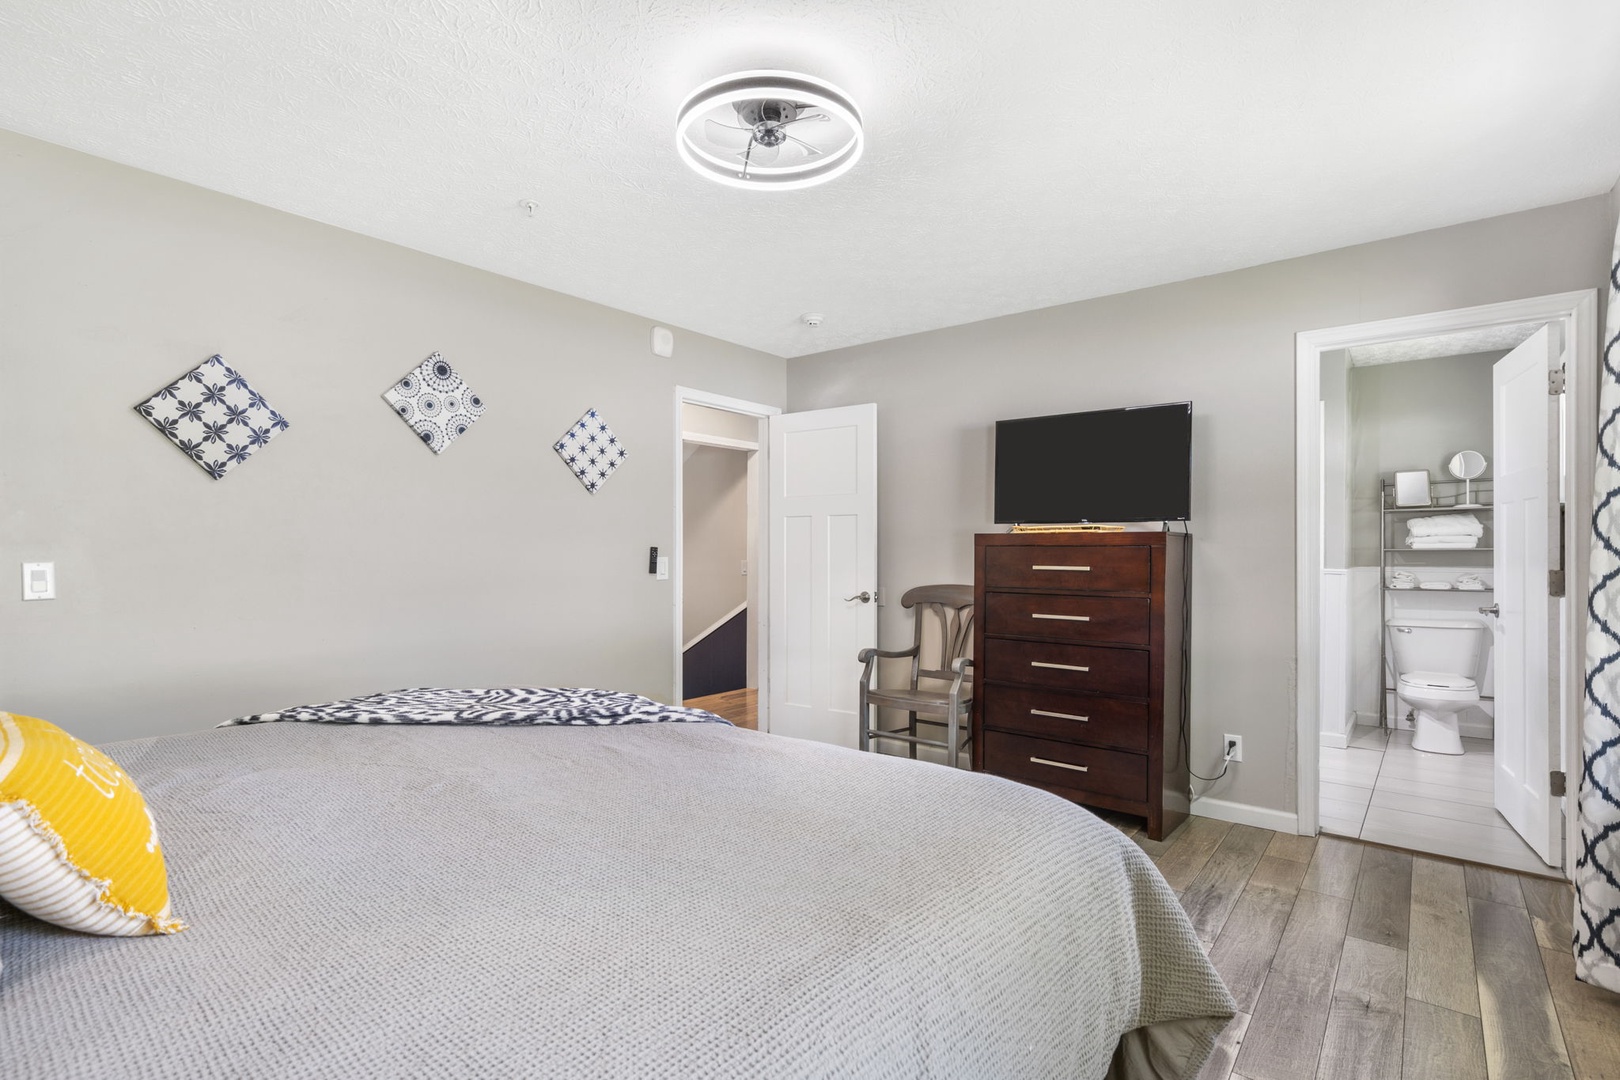 The spacious king suite includes a private en suite, Smart TV & ceiling fan